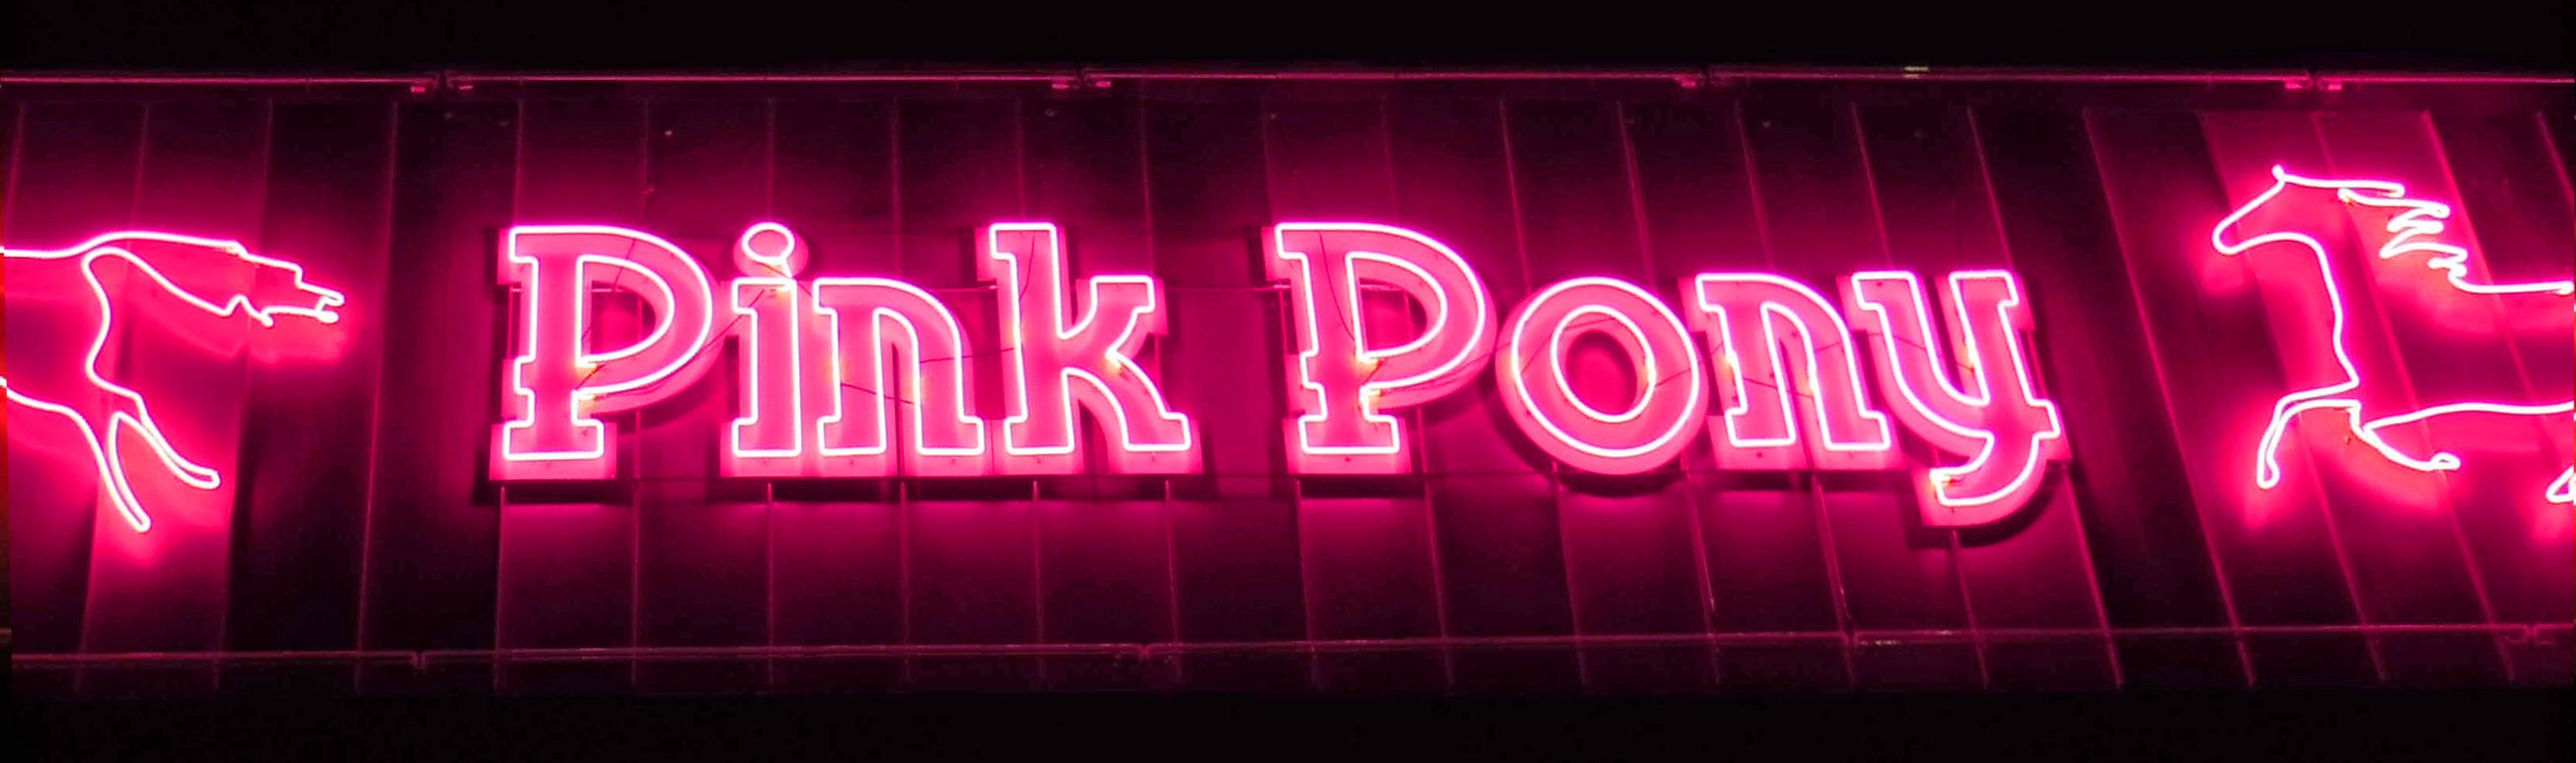 Pink Pony Gentlemen's Club -  Gentlemens Club Brothel Strip Club